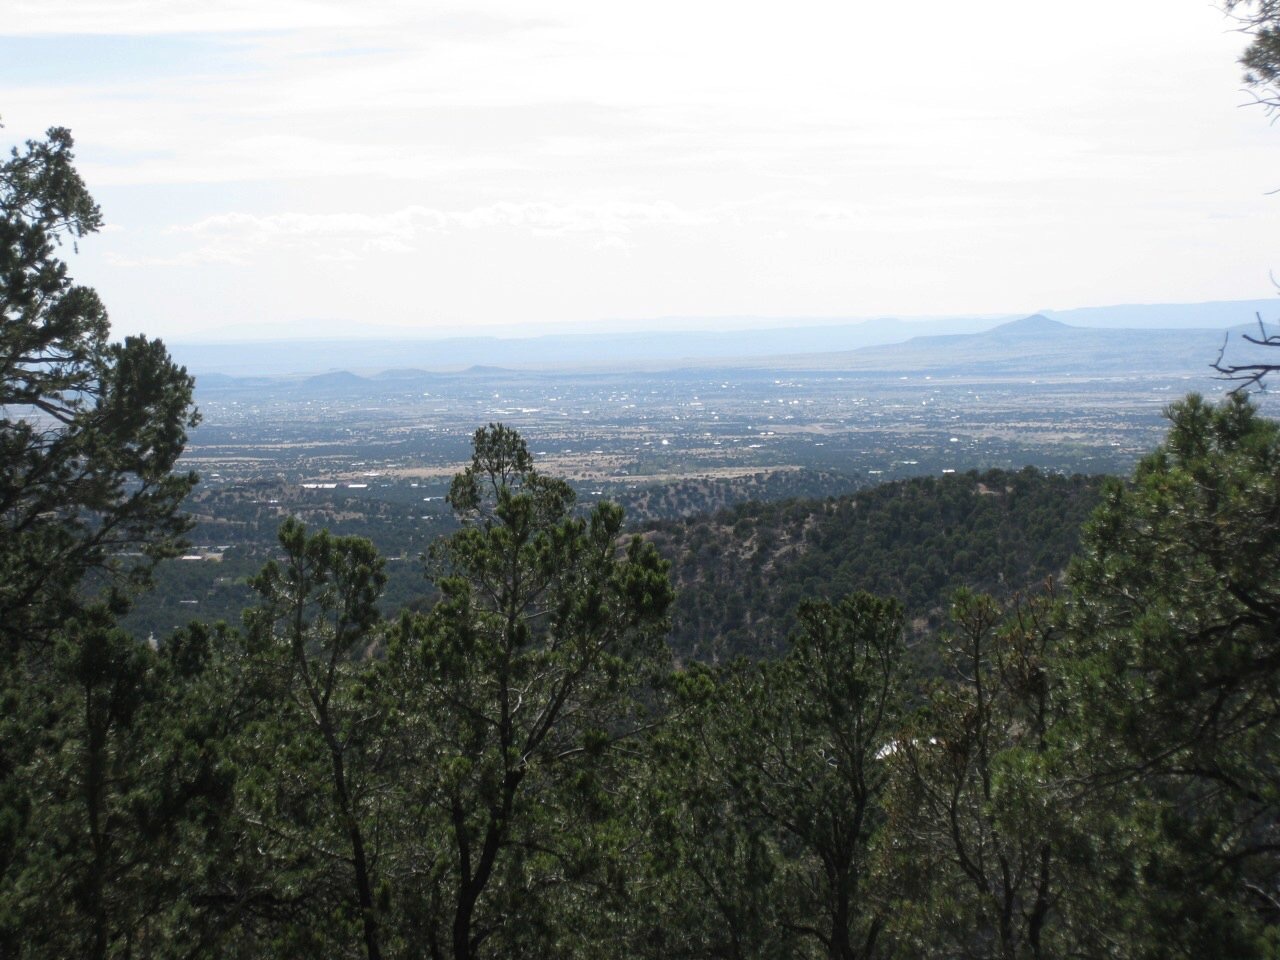 11 Mountain Top, Santa Fe, New Mexico 87505, ,Land,For Sale,11 Mountain Top,202002344